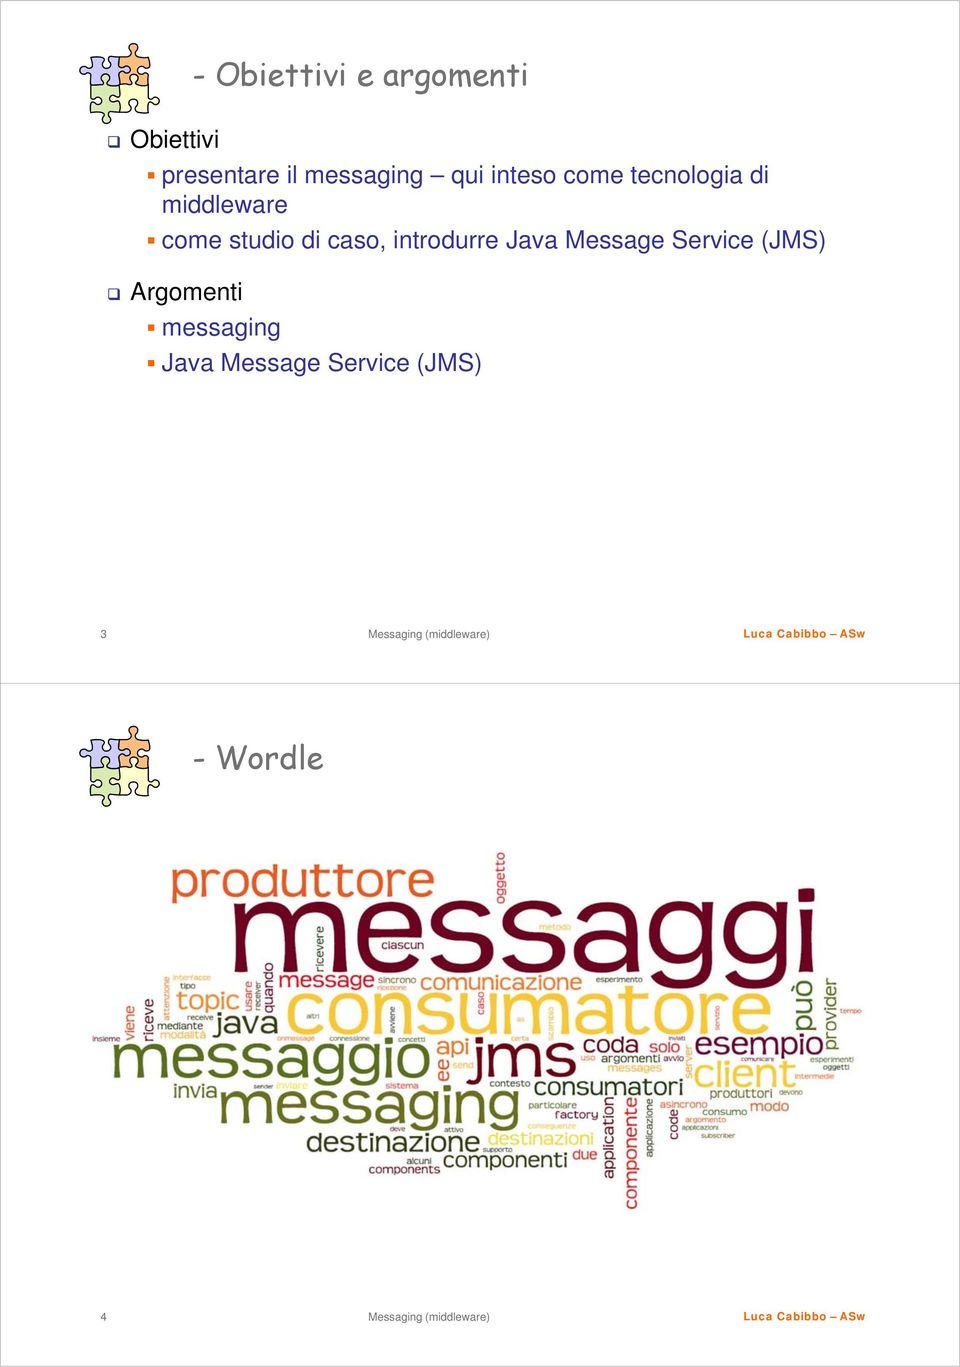 come studio di caso, introdurre Java Message Service